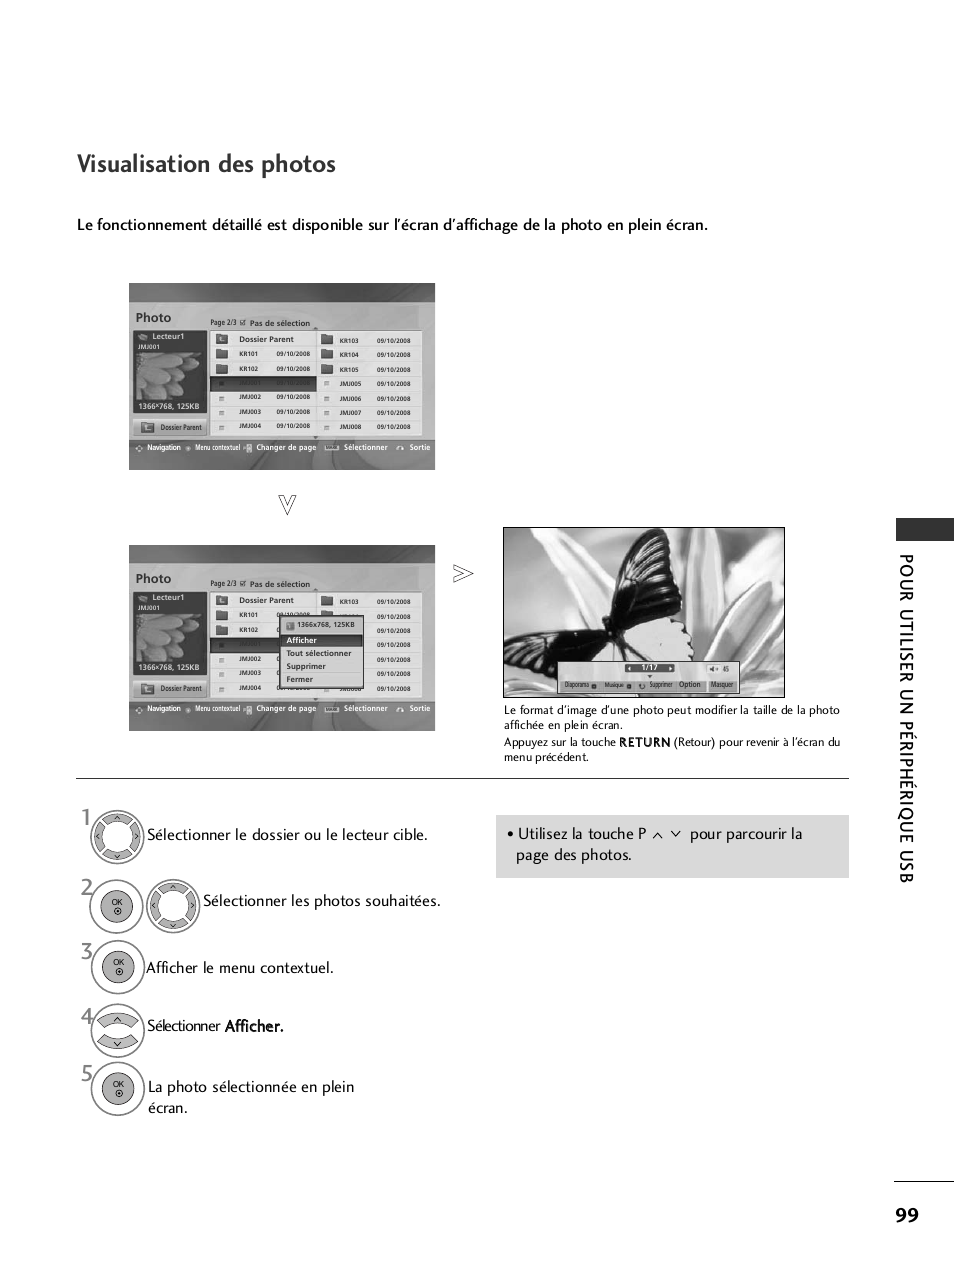 Visualisation des photos, Pour utiliser un périphérique usb | LG 32LH40 Manuel d'utilisation | Page 101 / 180